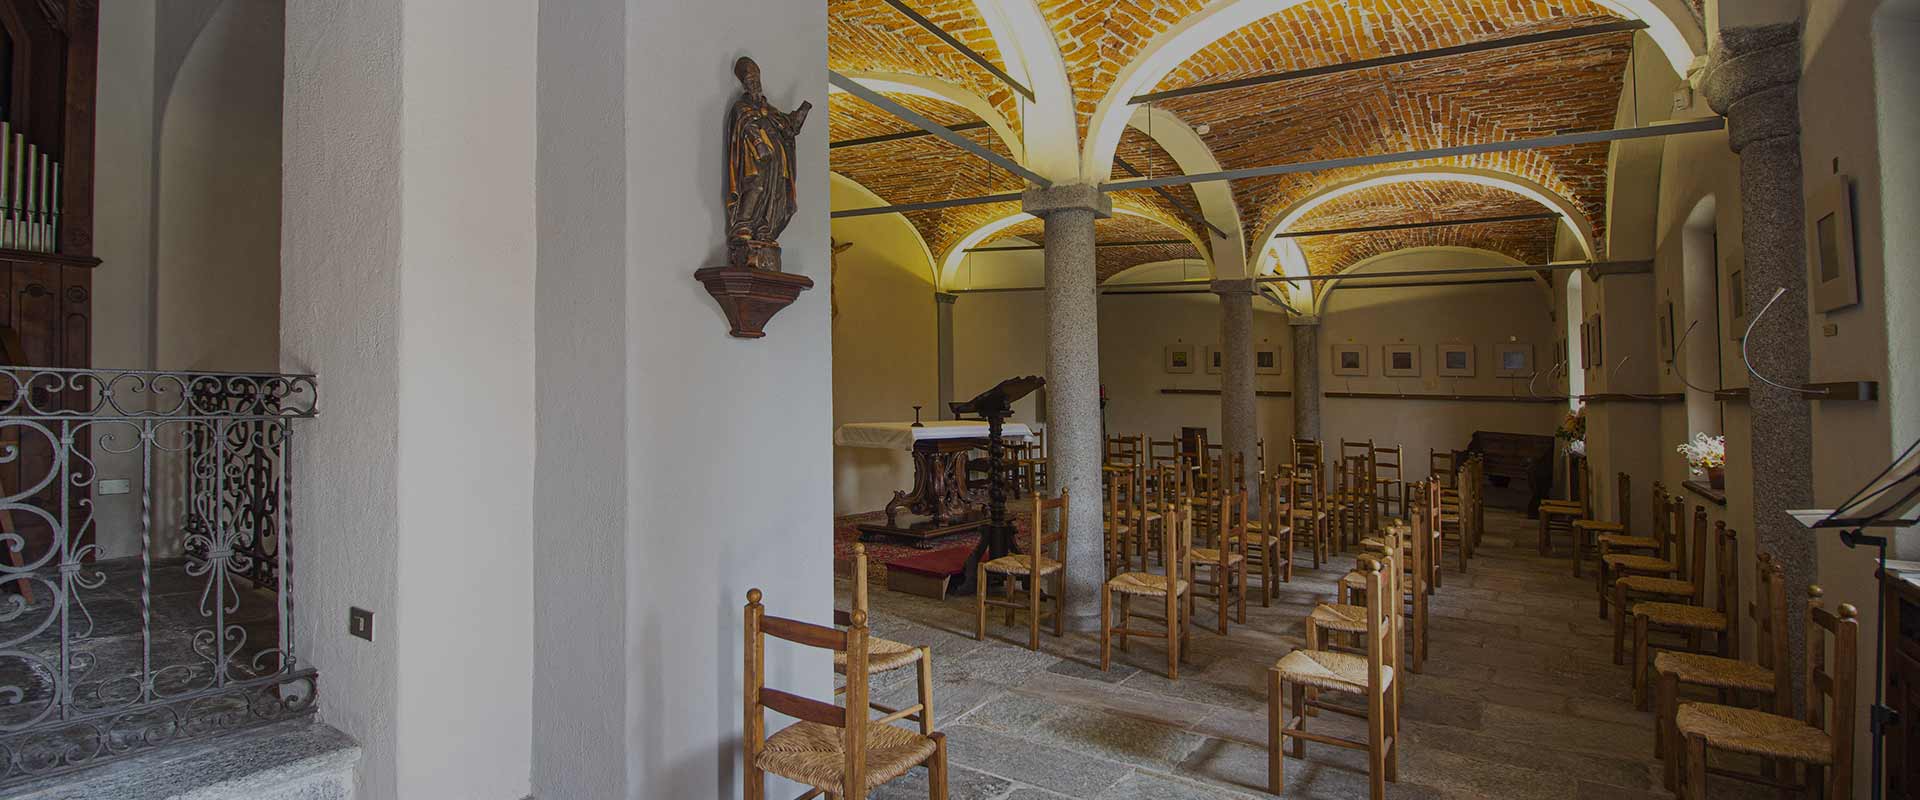 Chiesa-del-chiostro-1